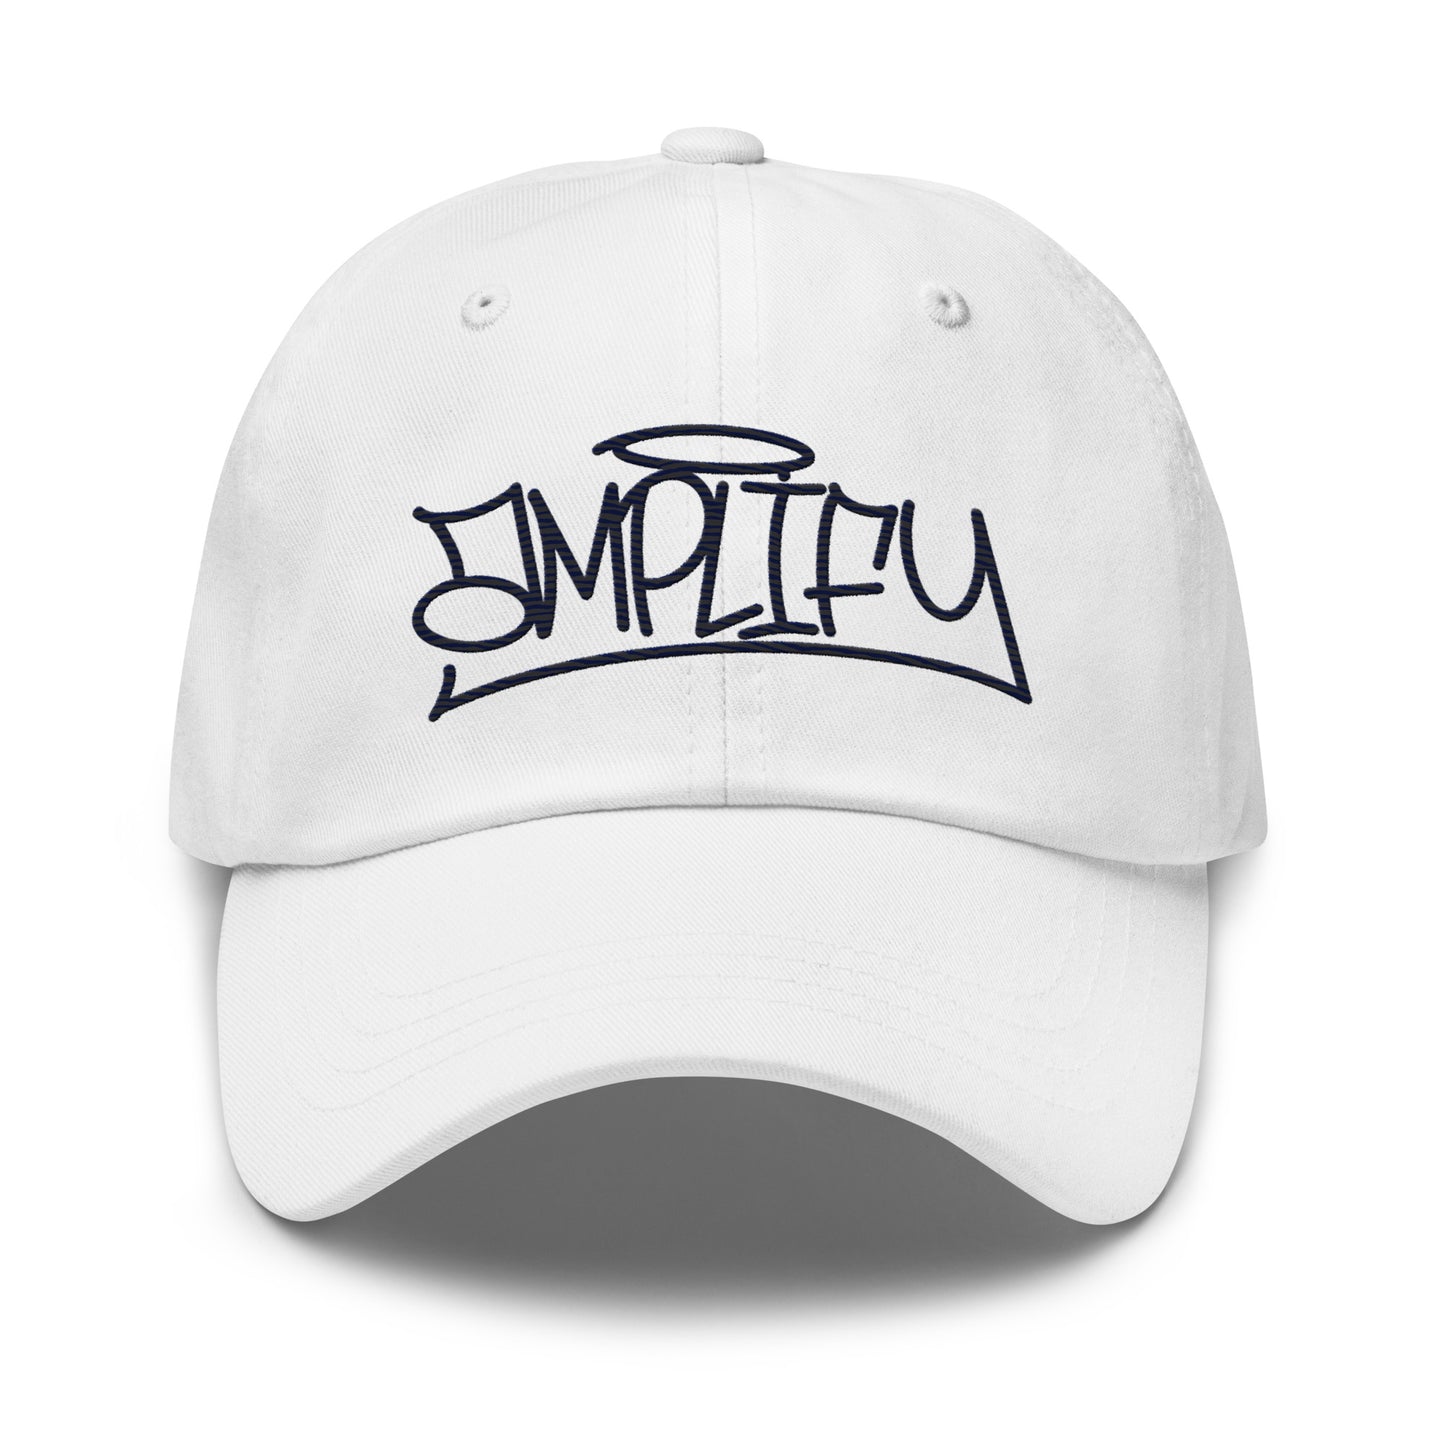 Amplify Graf Logo | Adjustable hat